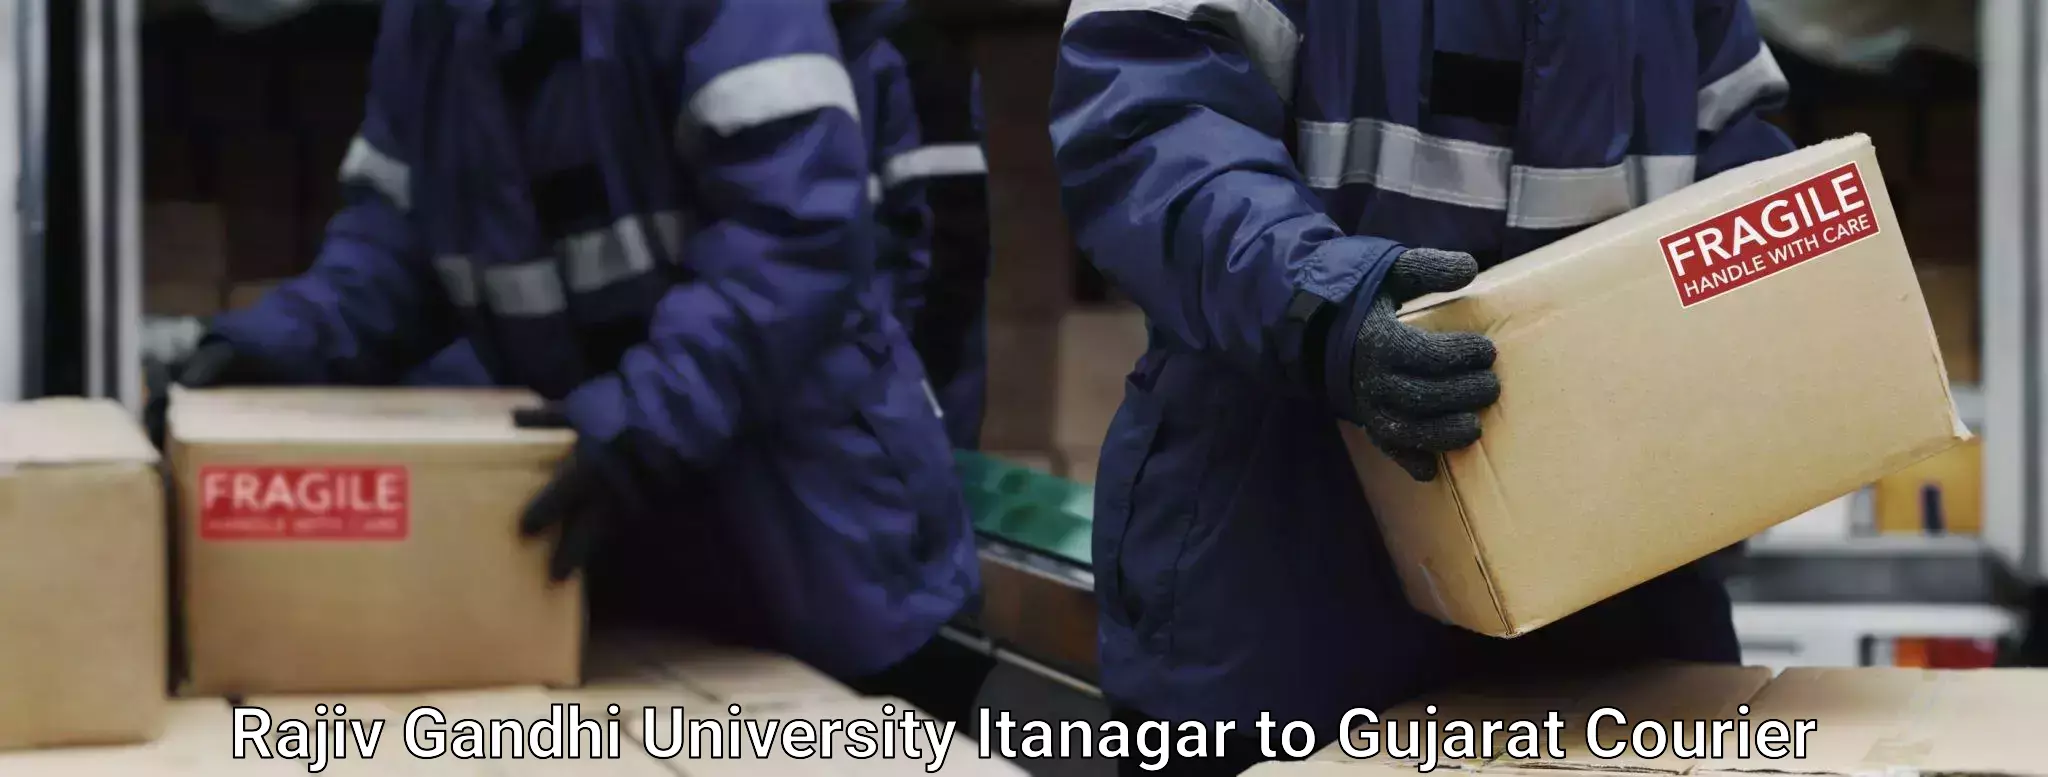 Baggage shipping advice Rajiv Gandhi University Itanagar to Gujarat